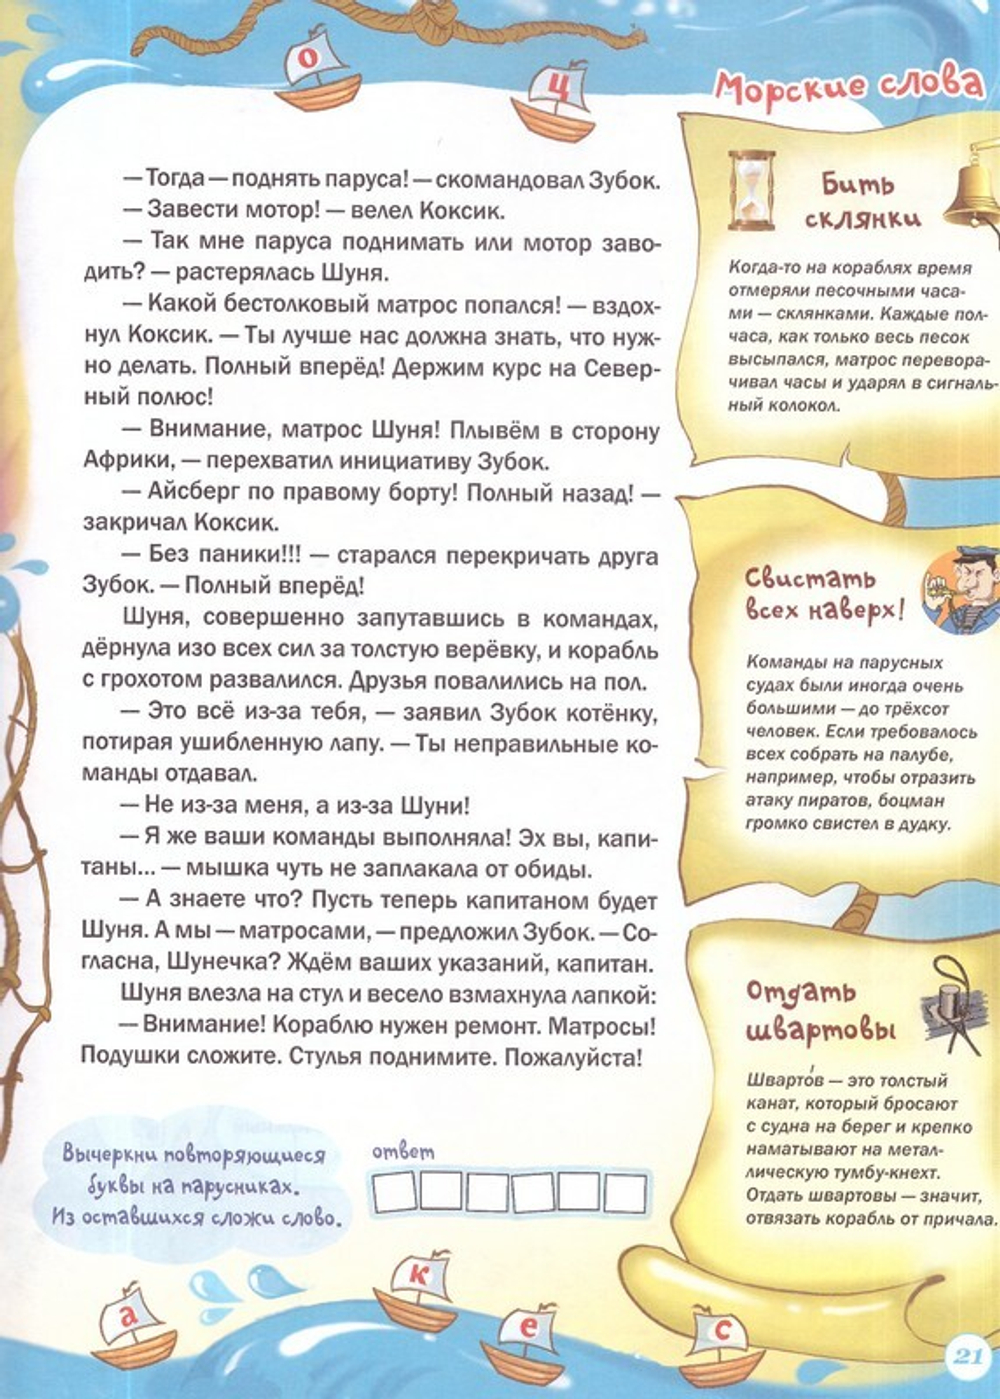 Журнал "Шишкин лес" № 5 Май 2023 г.